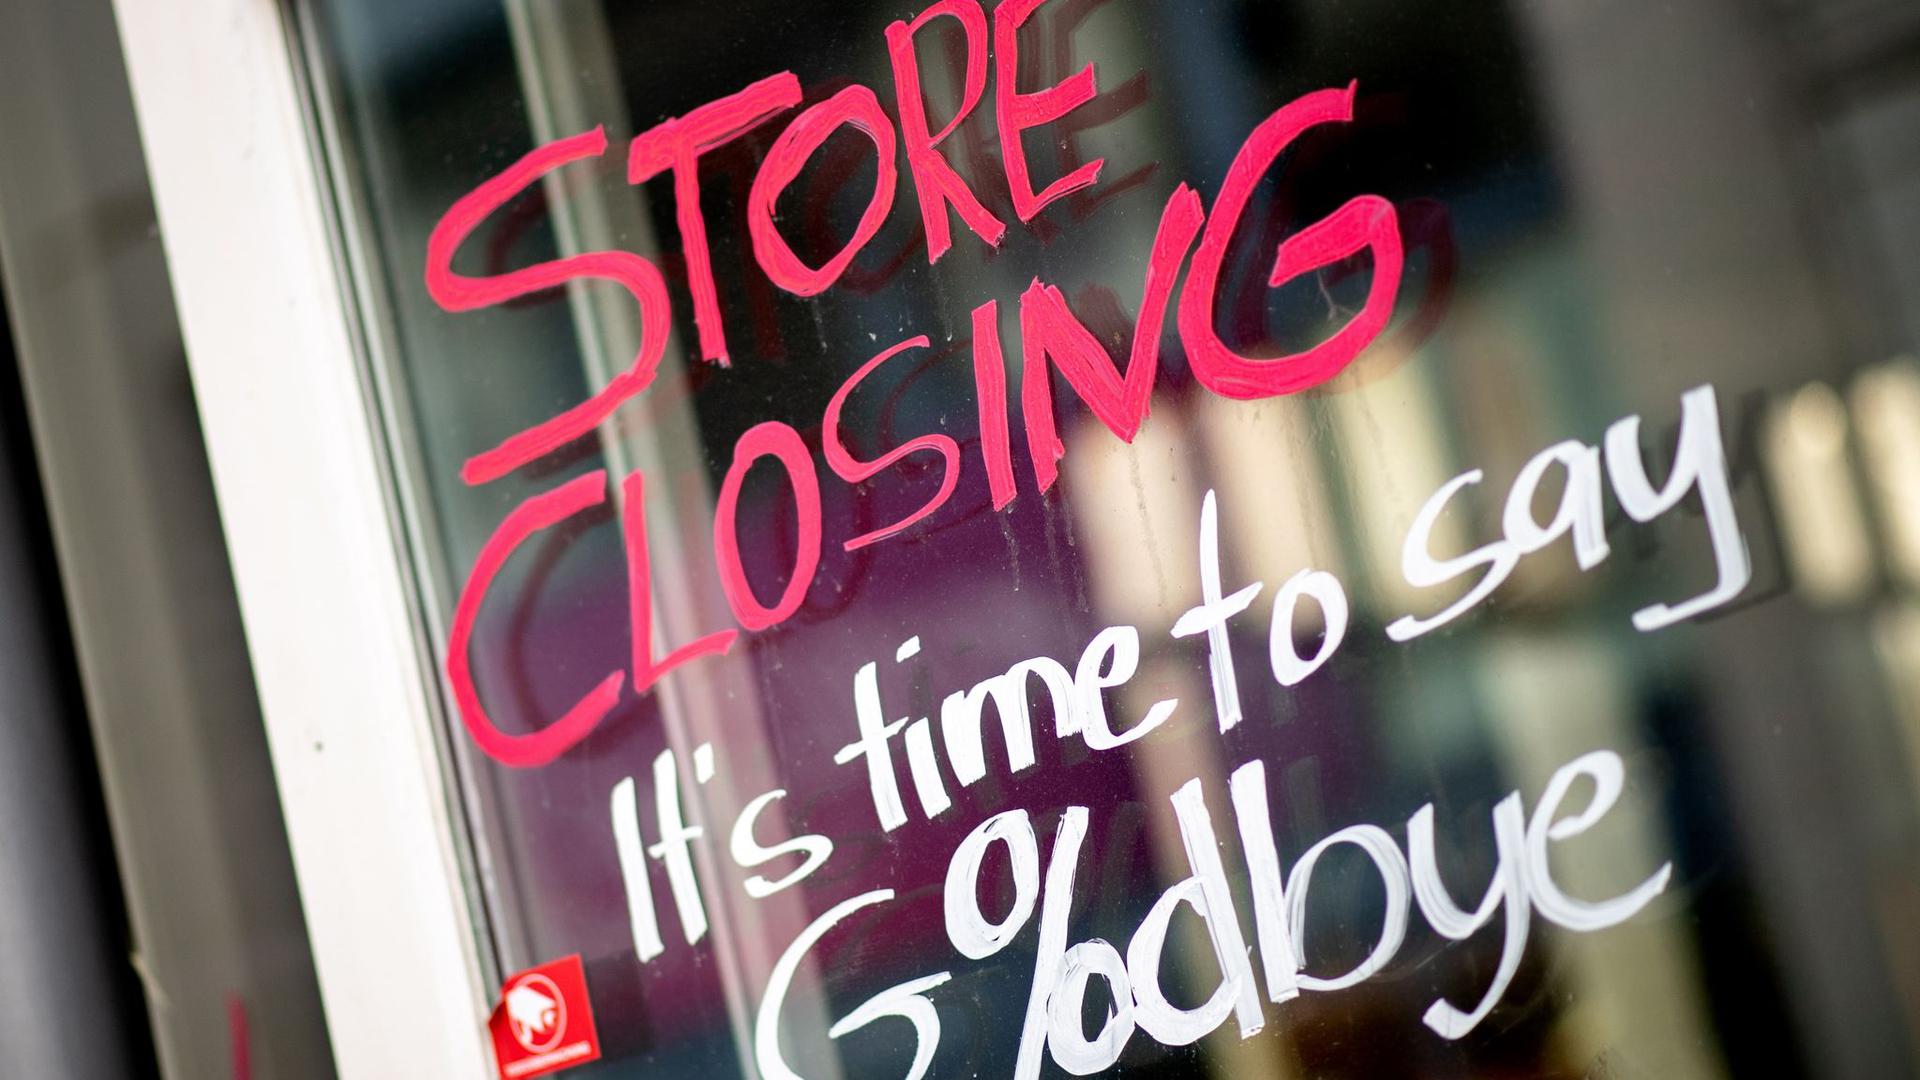 Die englische Aufschrift „Store Closing“ und der Zusatz „It’s time to say Goodbye“ steht auf dem Schaufenster eines geschlossenen Geschäfts in der Oldenburger Innenstadt